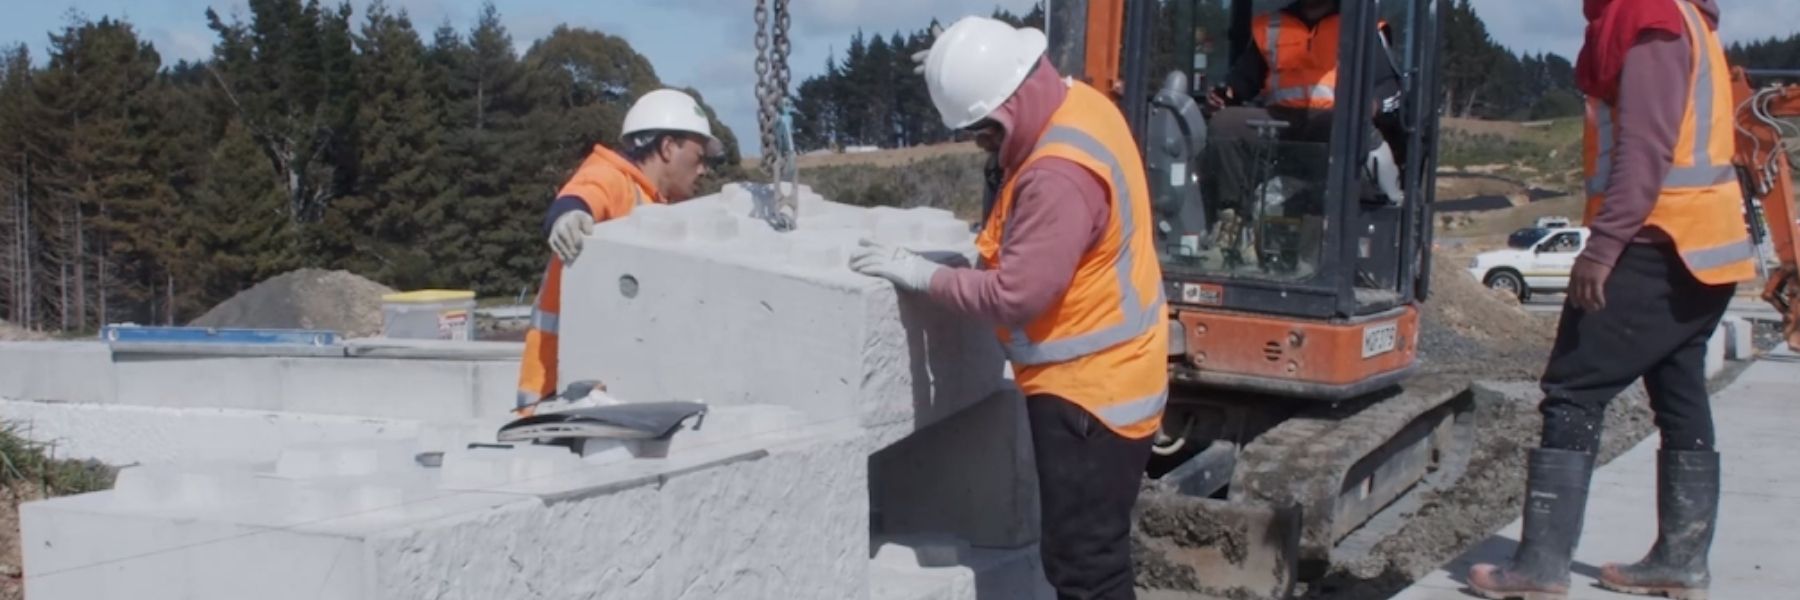 2 men installing a 800 Stonebloc base concrete block  onto a 1200 Stonebloc base concrete block